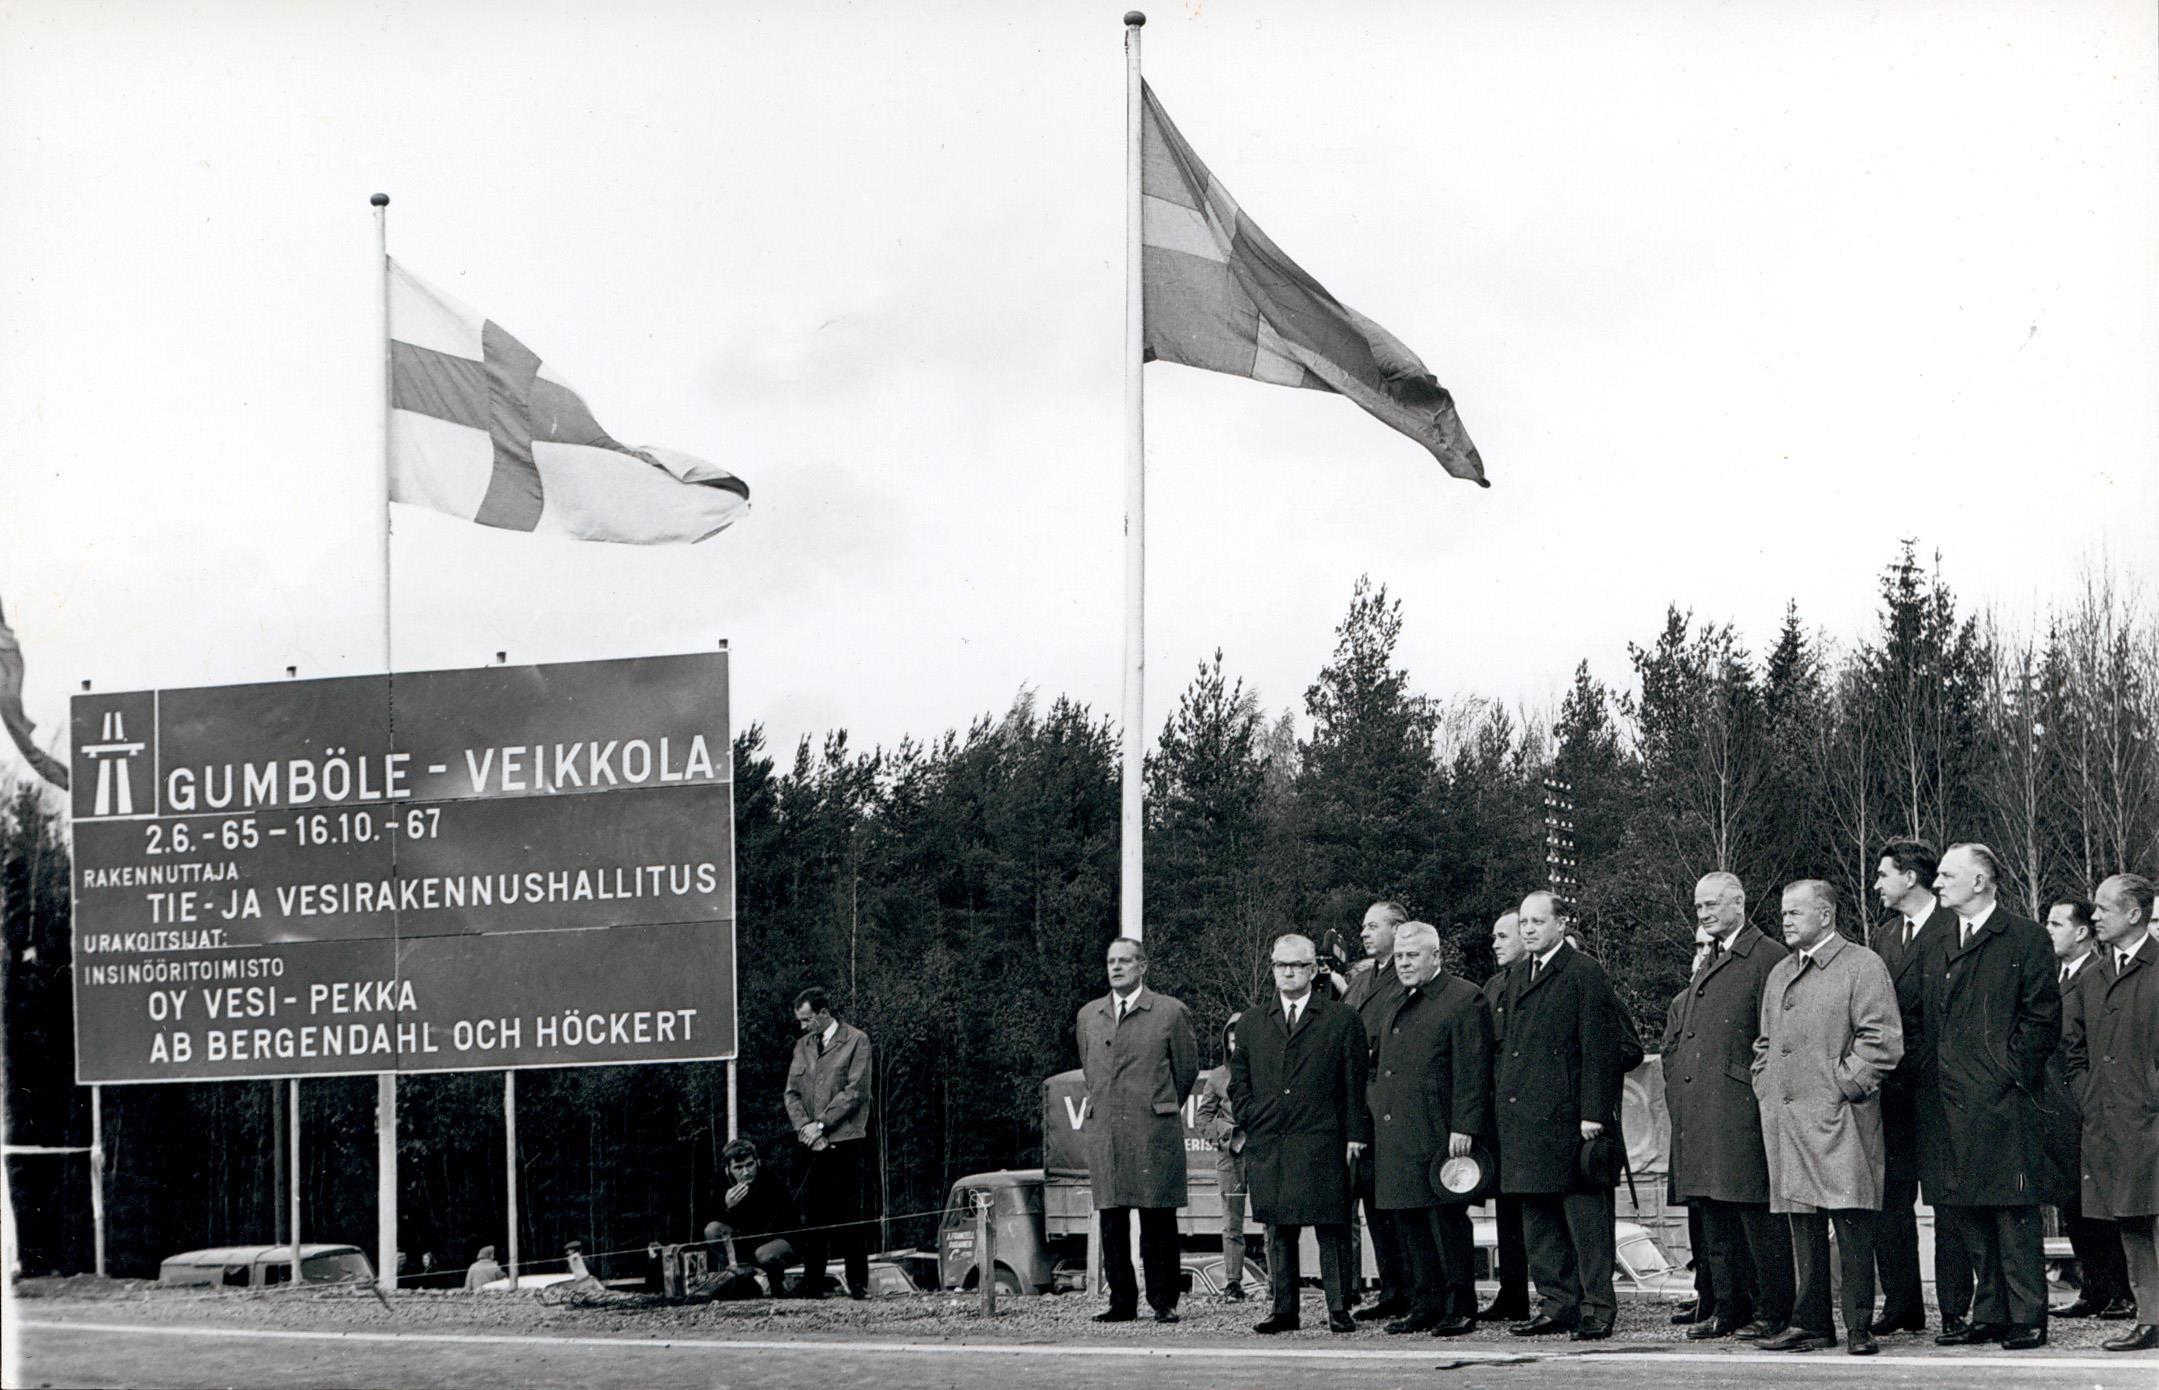 16.10.1967. Vierasjoukkoa Gumböle-Veikkola -moottoritien avajaistilaisuudessa. (Infra ry - Mobilia)